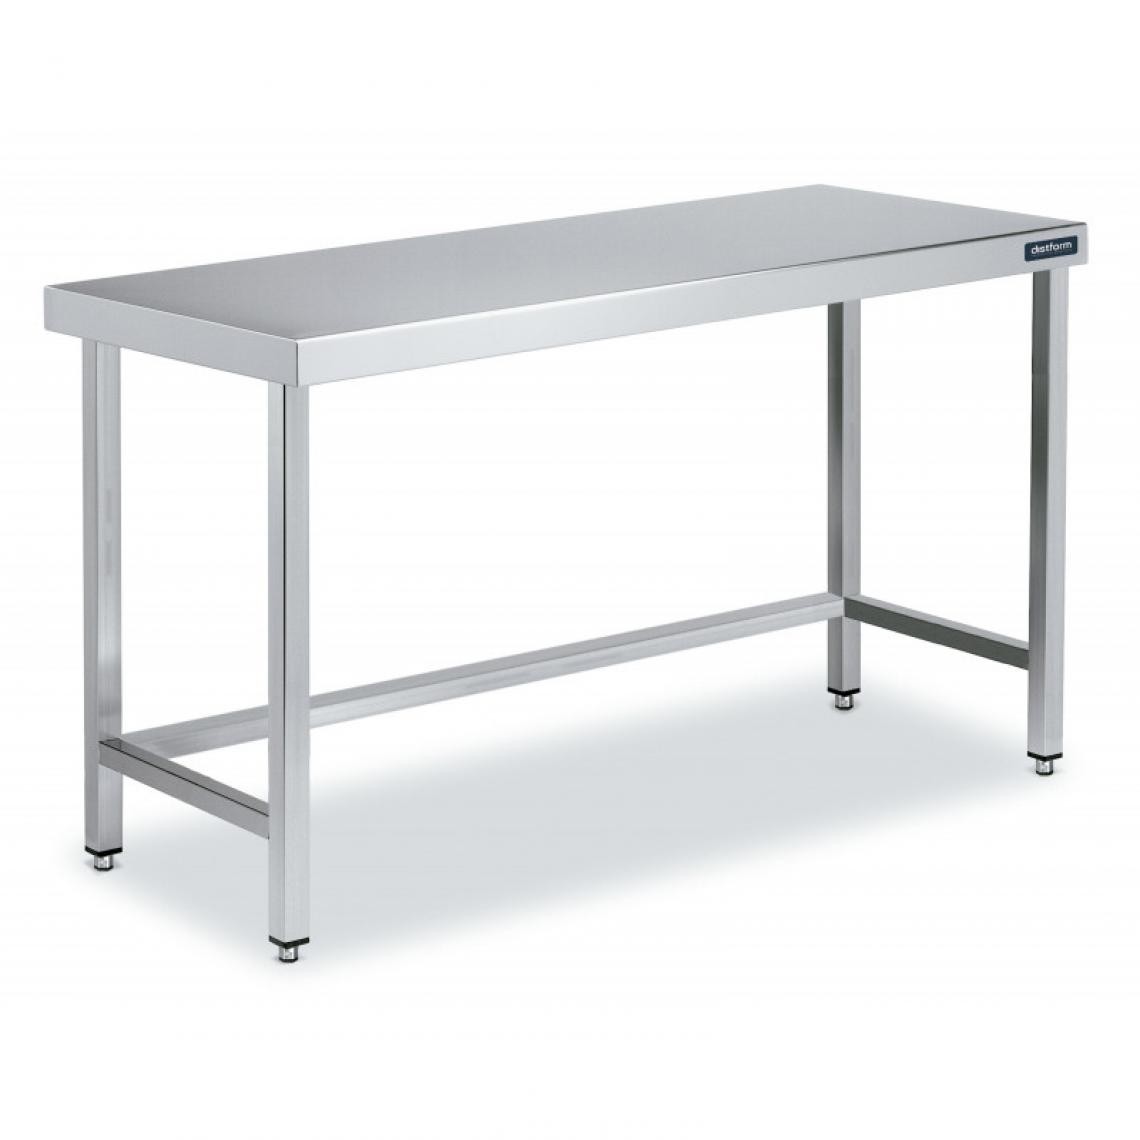 DISTFORM - Table Centrale en Inox avec renforts Profondeur 700 mm - Distform - Acier inoxydable2400x700 - Tables à manger